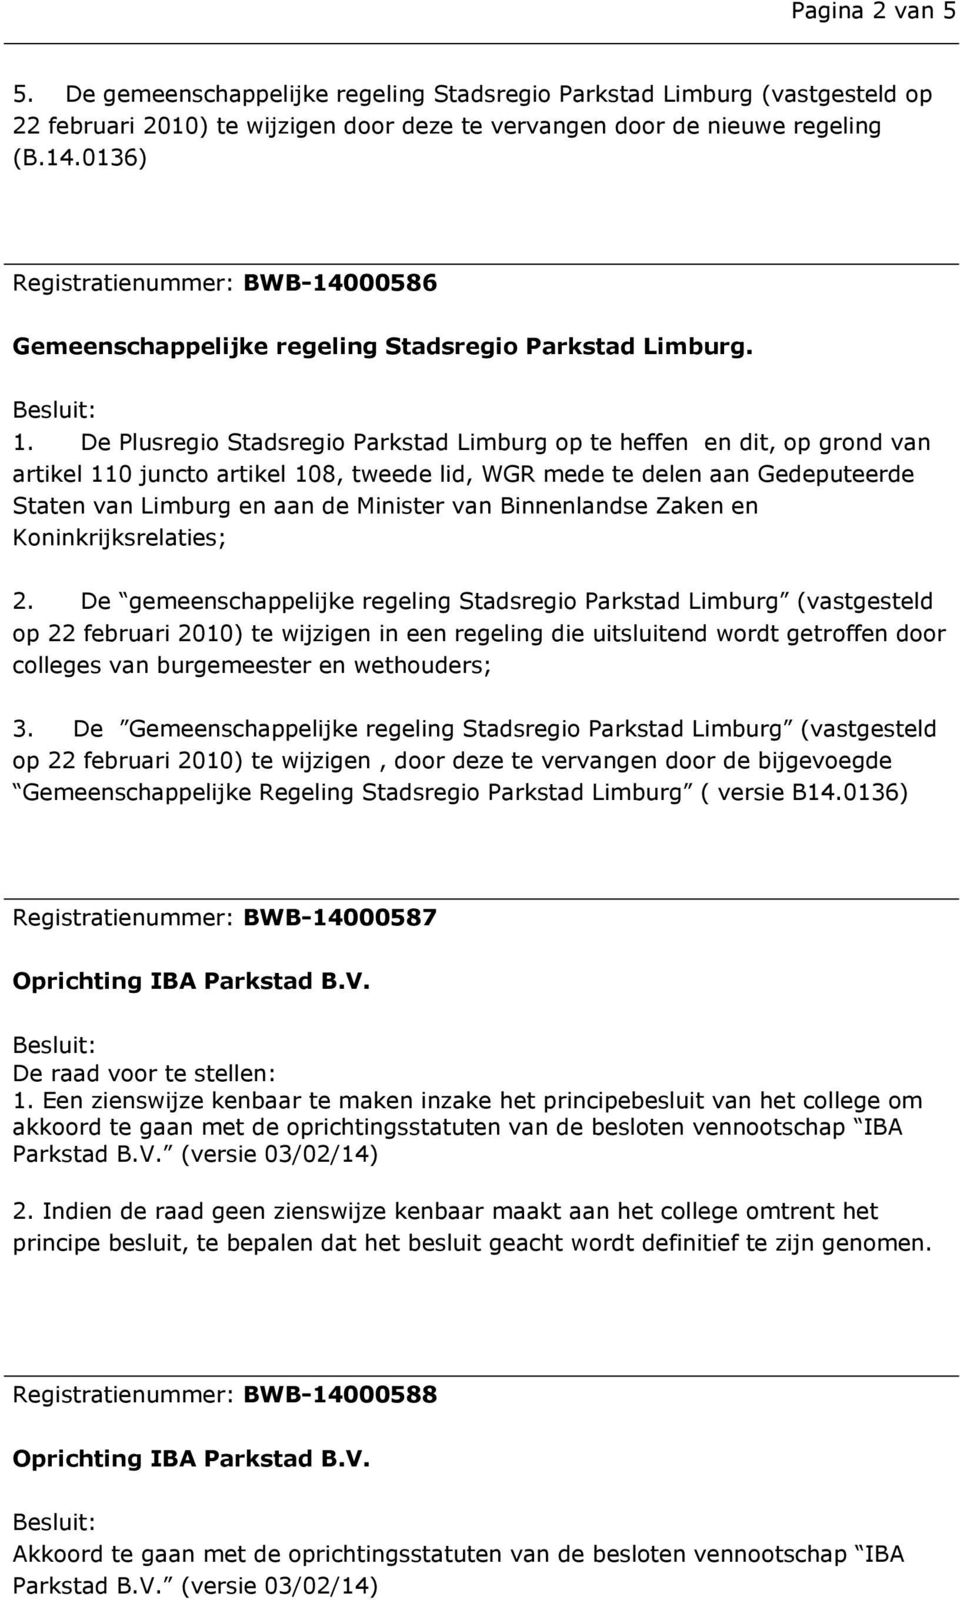 De Plusregio Stadsregio Parkstad Limburg op te heffen en dit, op grond van artikel 110 juncto artikel 108, tweede lid, WGR mede te delen aan Gedeputeerde Staten van Limburg en aan de Minister van